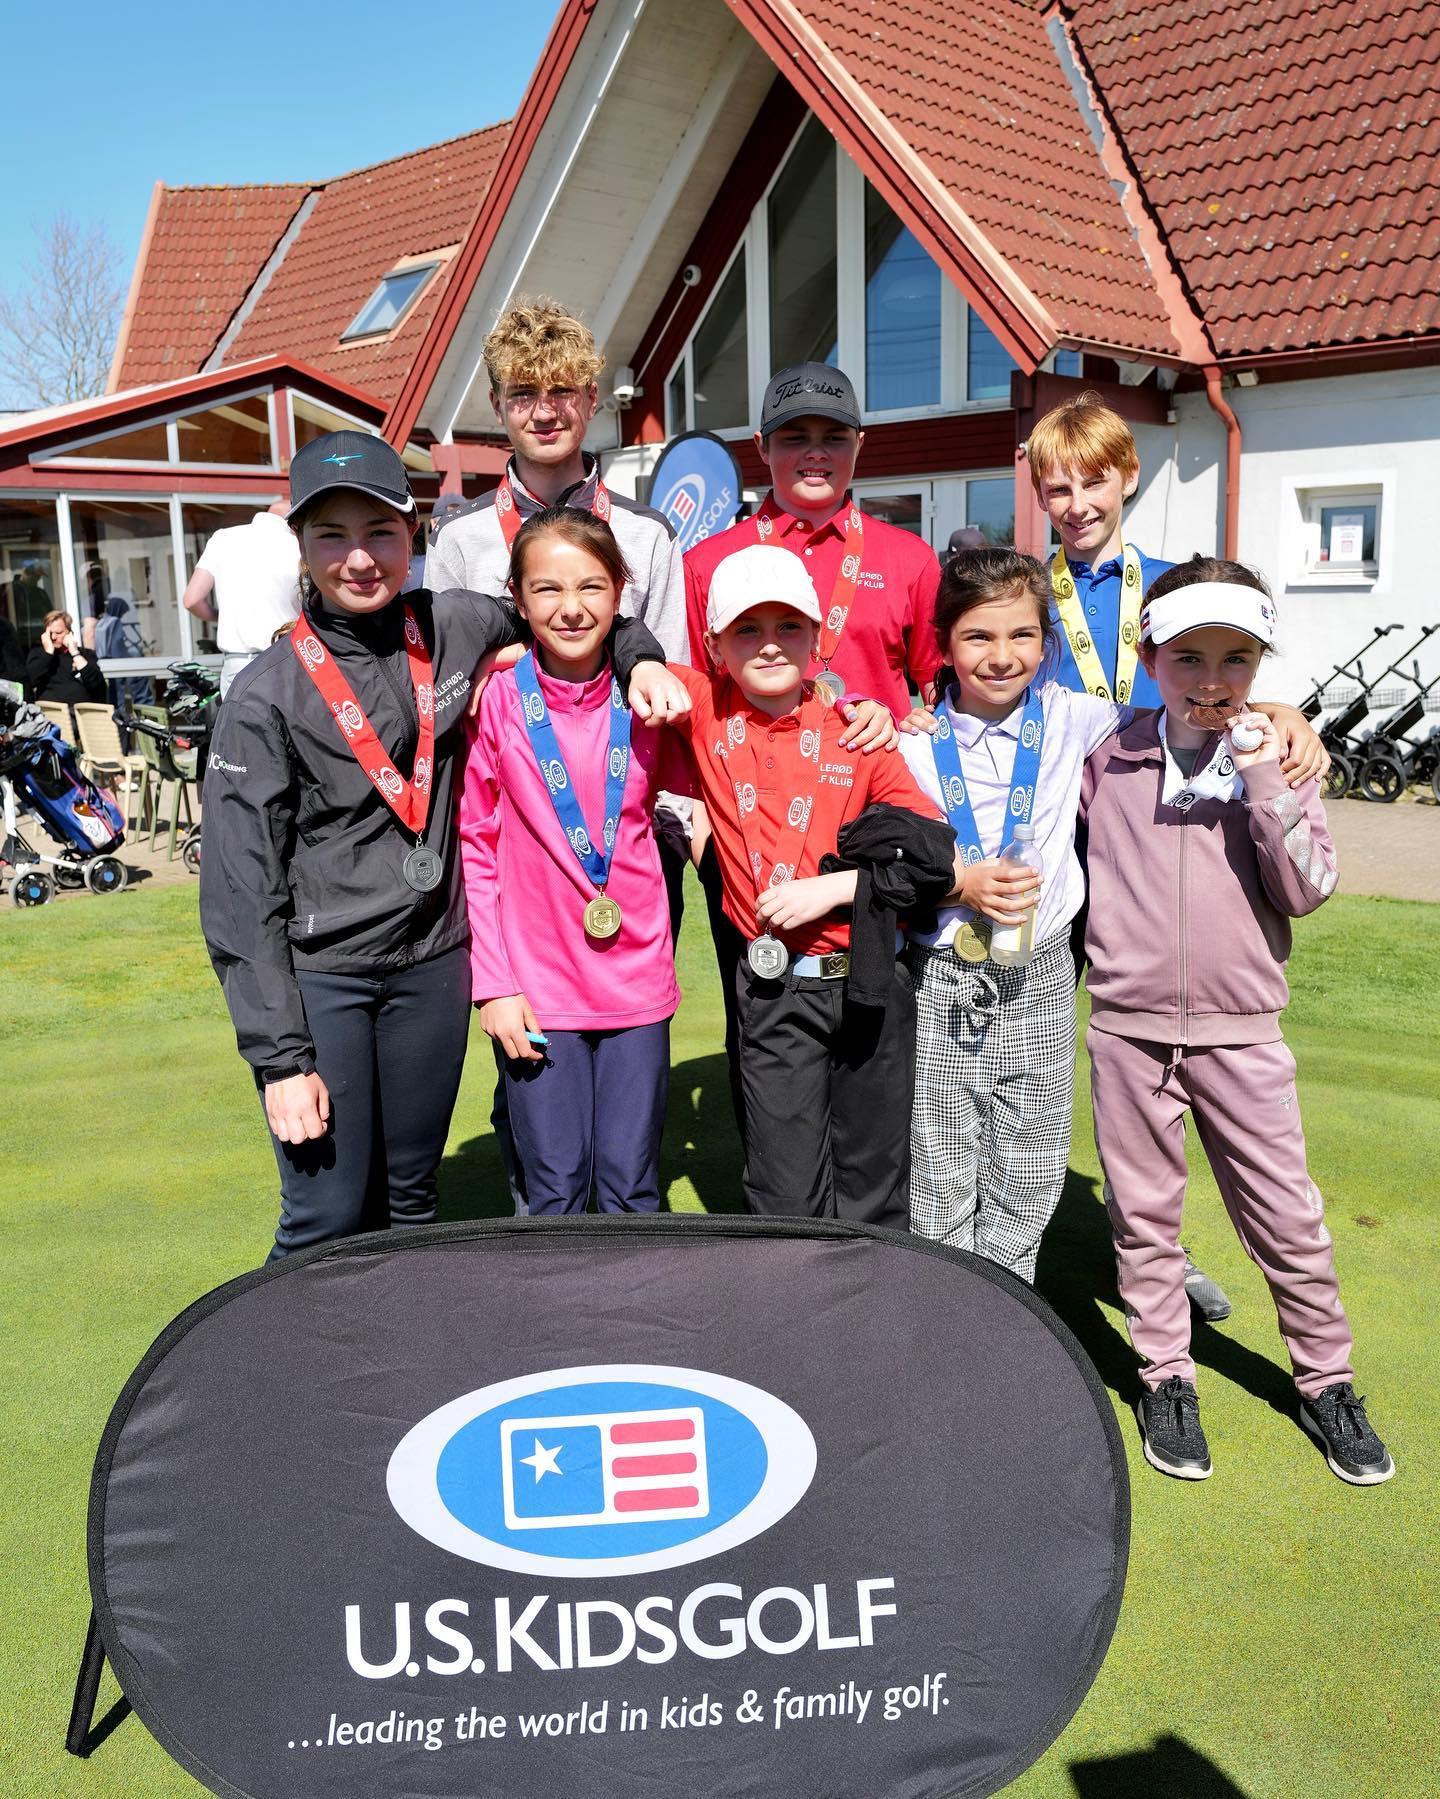 I søndags havde vi 10 #hgkjuniorer som spillede på den anden side af Øresundsbroen til Copenhagen Local Tour som afholdes af @uskidsgolfdenmark Tak for en hyggelig dag ⛳️🇸🇪 
#hgkjunior #juniorturnering #juniortävling #uskidsgolf #uskidsgolfdenmark #copenhagenlocaltour #juniorgolfers #golfaddicted #golfdk #hillerødgolf #hintongolf #hintongolfklubb #svenskgolf